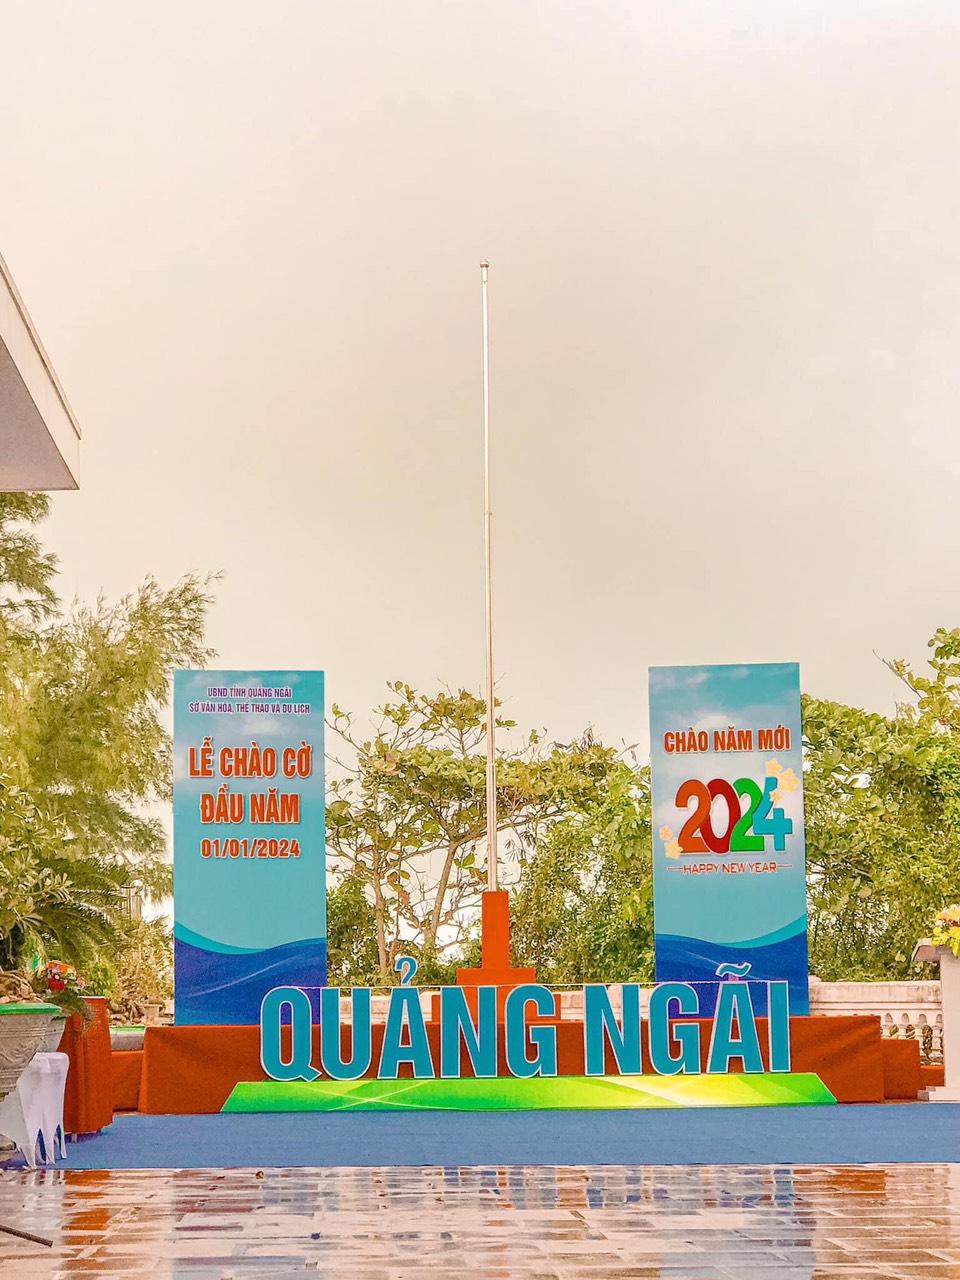 Tổ chức lễ chào cờ đầu năm 2024 tại Trạm đèn biển Ba Làng An